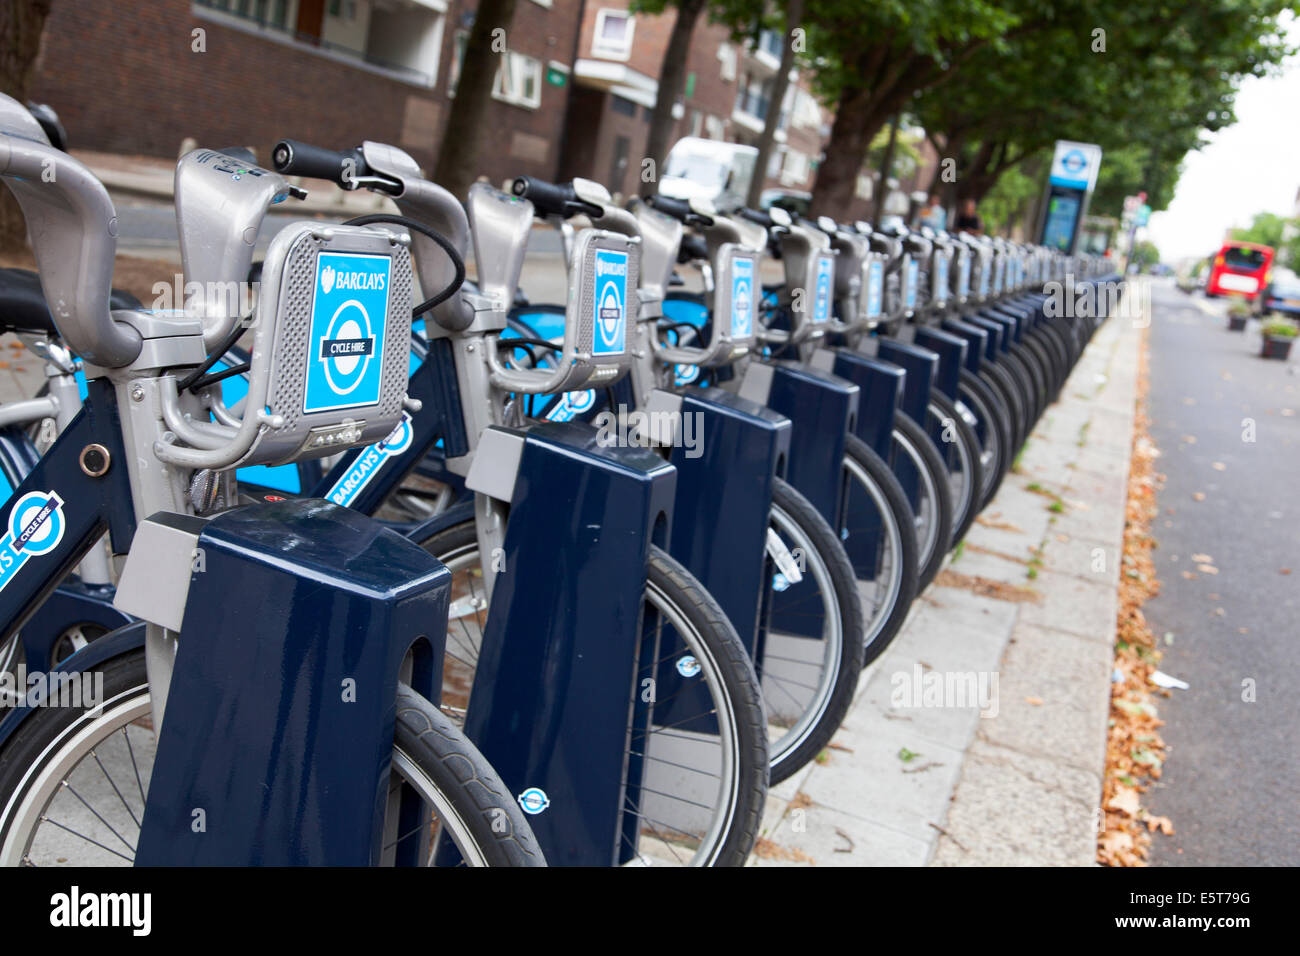 Eine Reihe von Barclays Fahrräder zu mieten im Zentrum von London Stockfoto